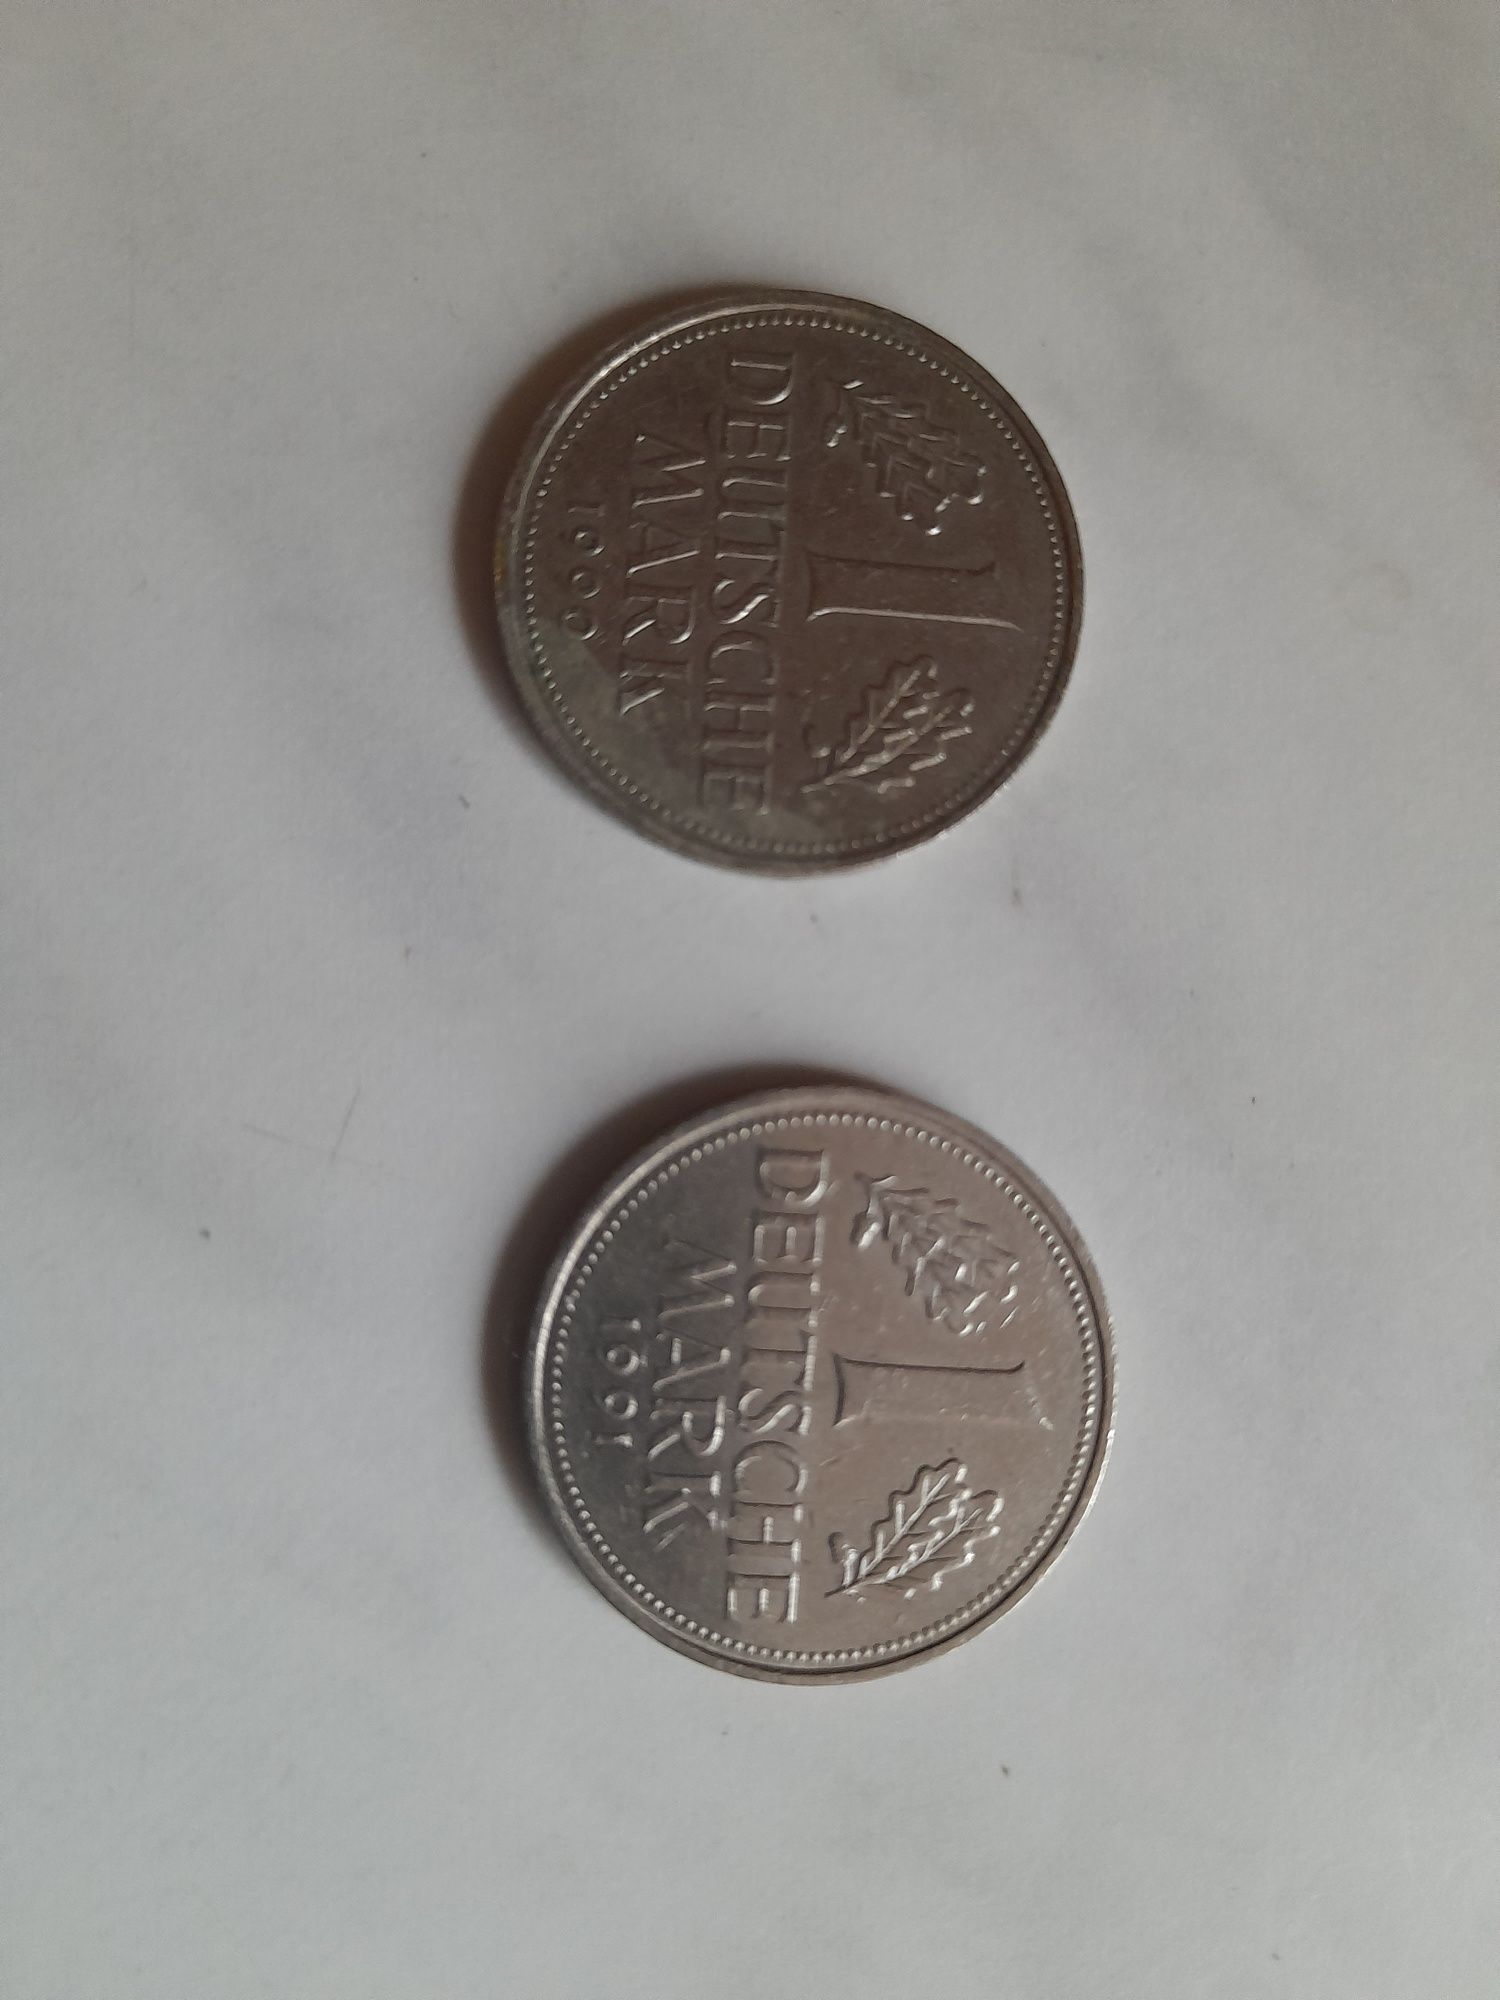 1 marka Deutsche mark 1950